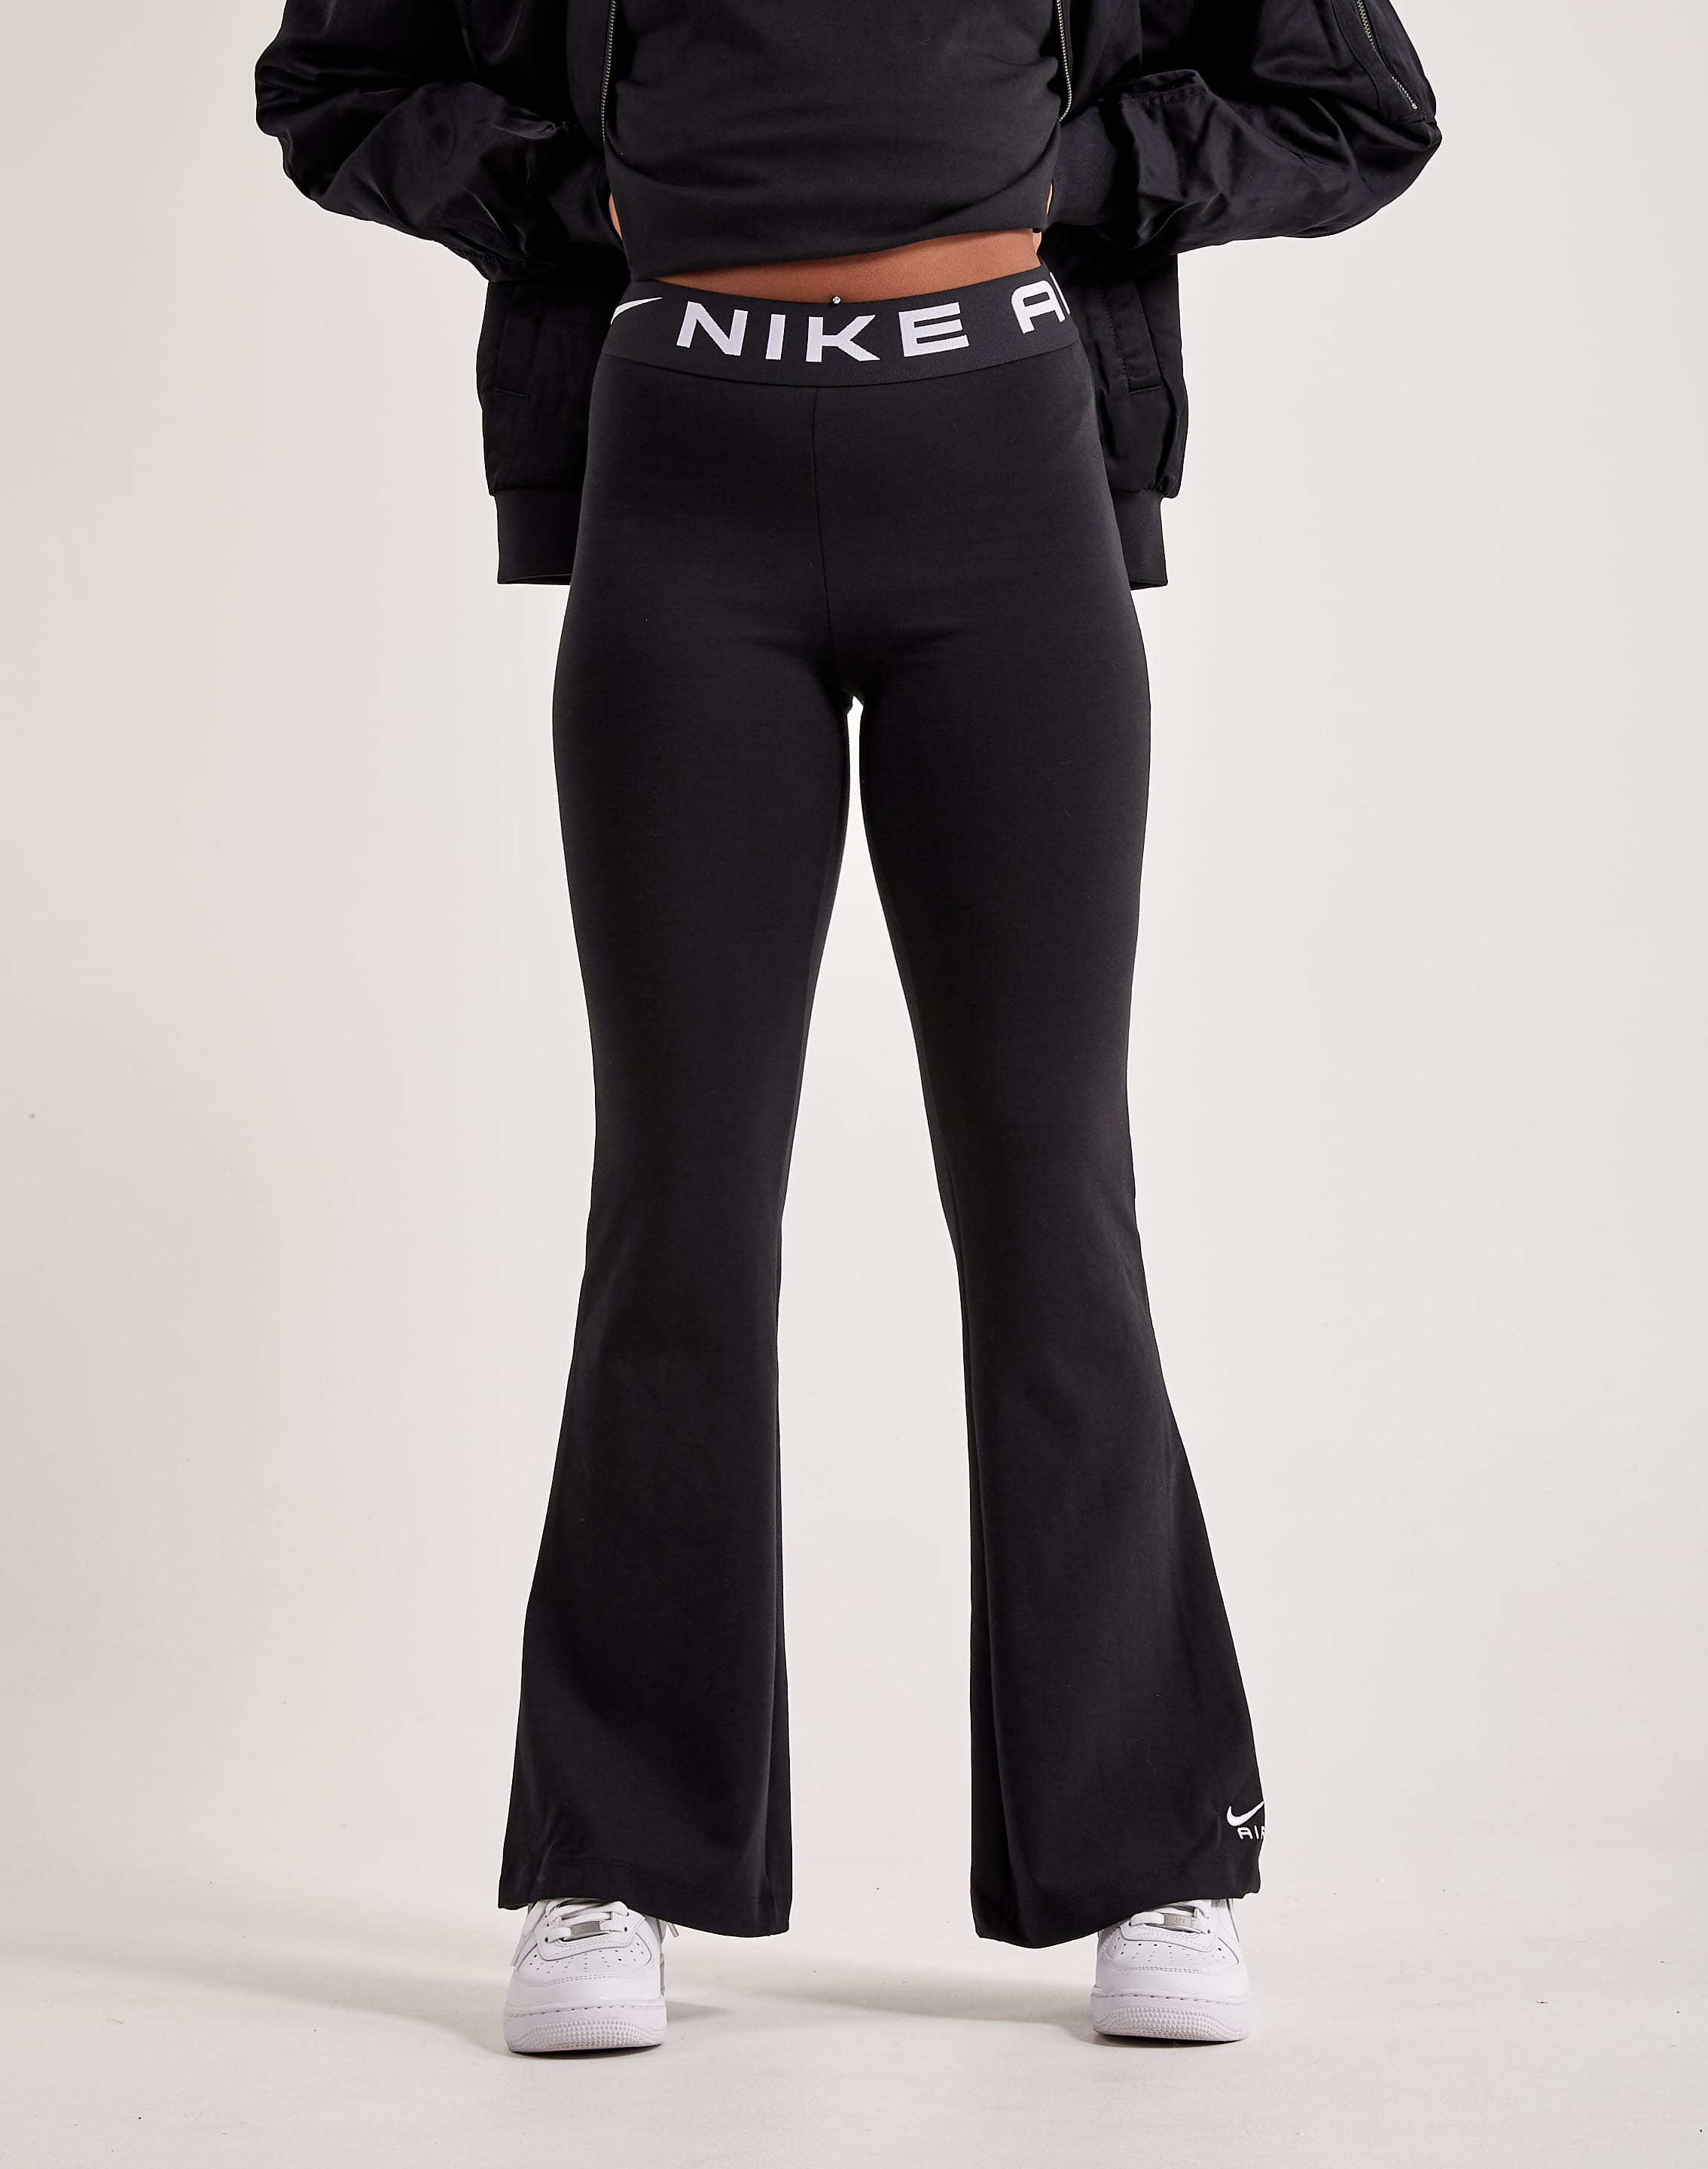 Nike - Black Flared Leggings